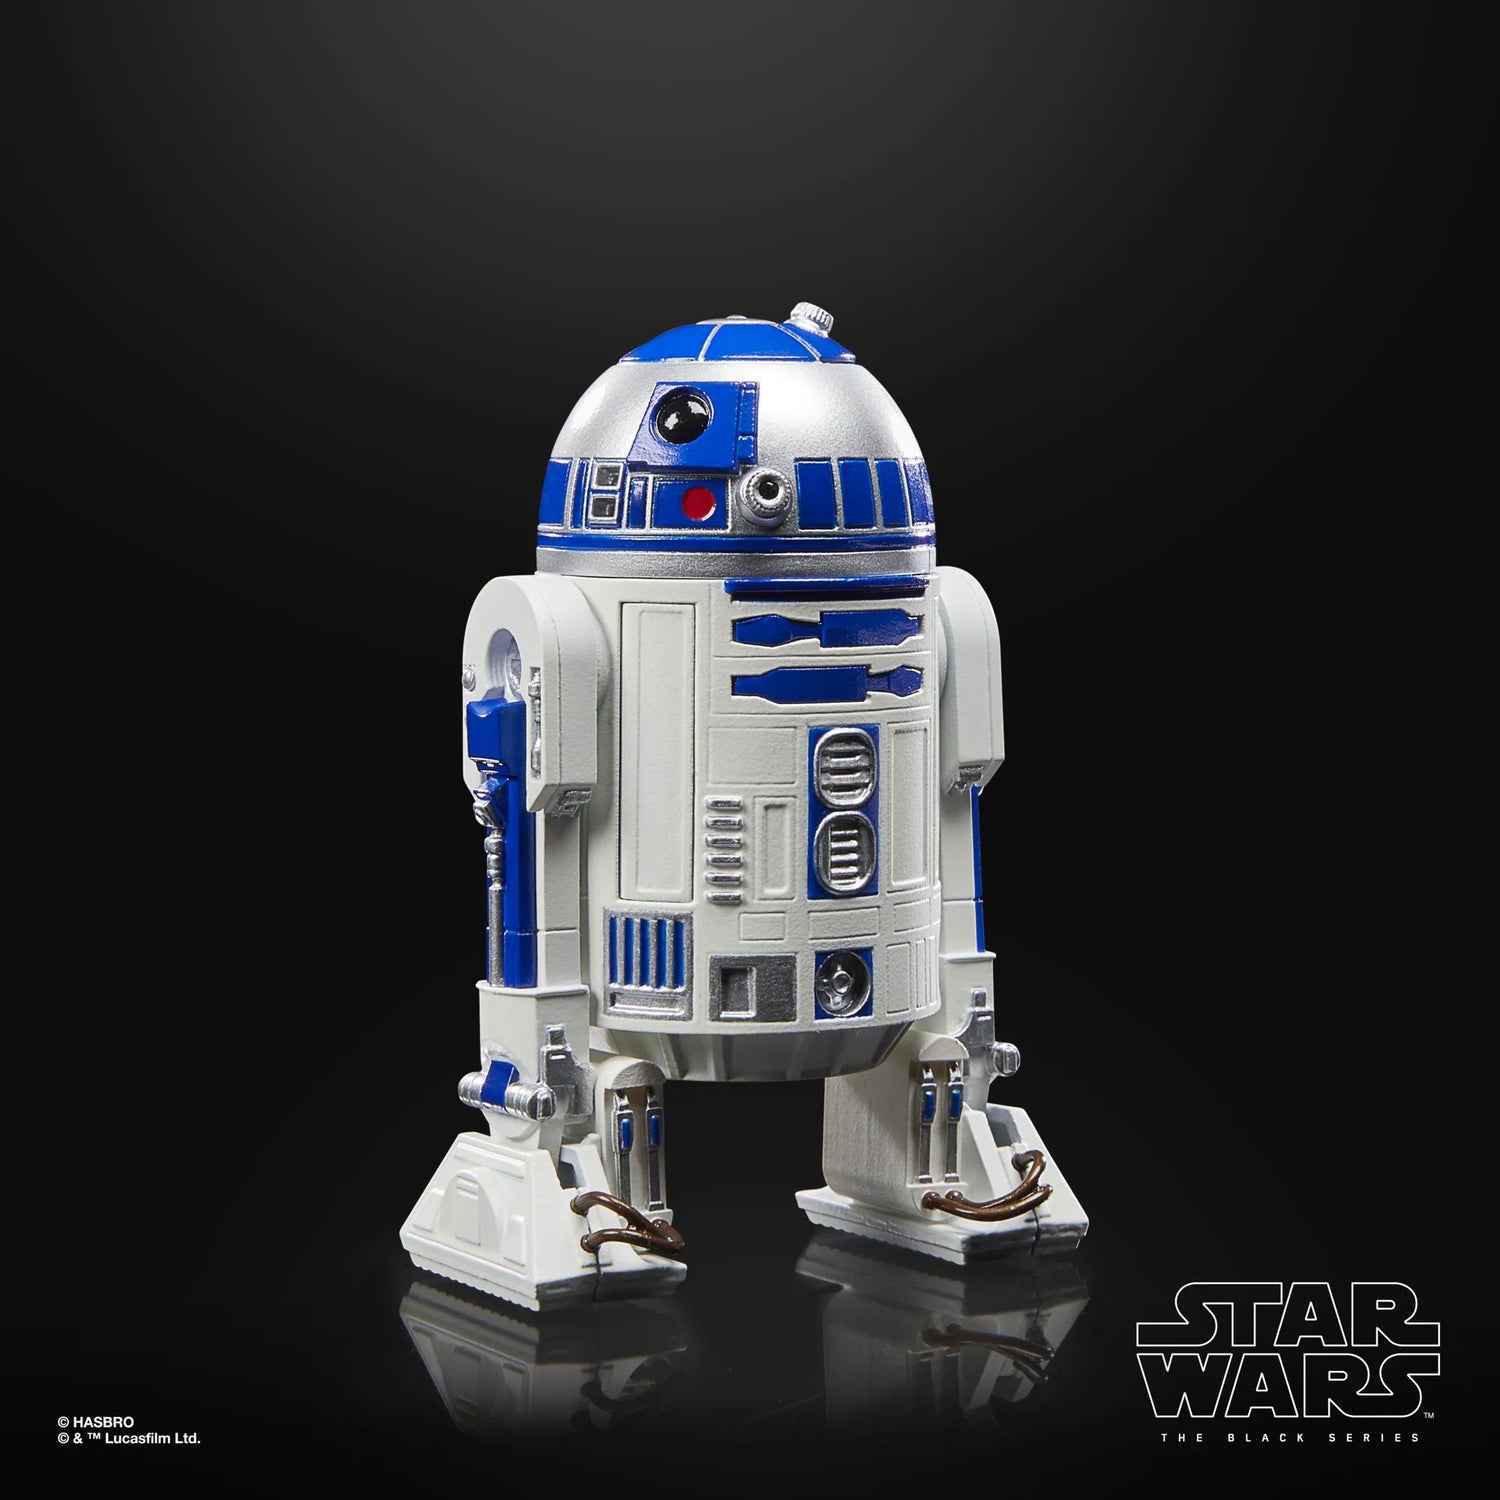 Star Wars: The Black Series Return of the Jedi 40th Anniversary R2-D2 (Artoo-Deetoo) Hasbro